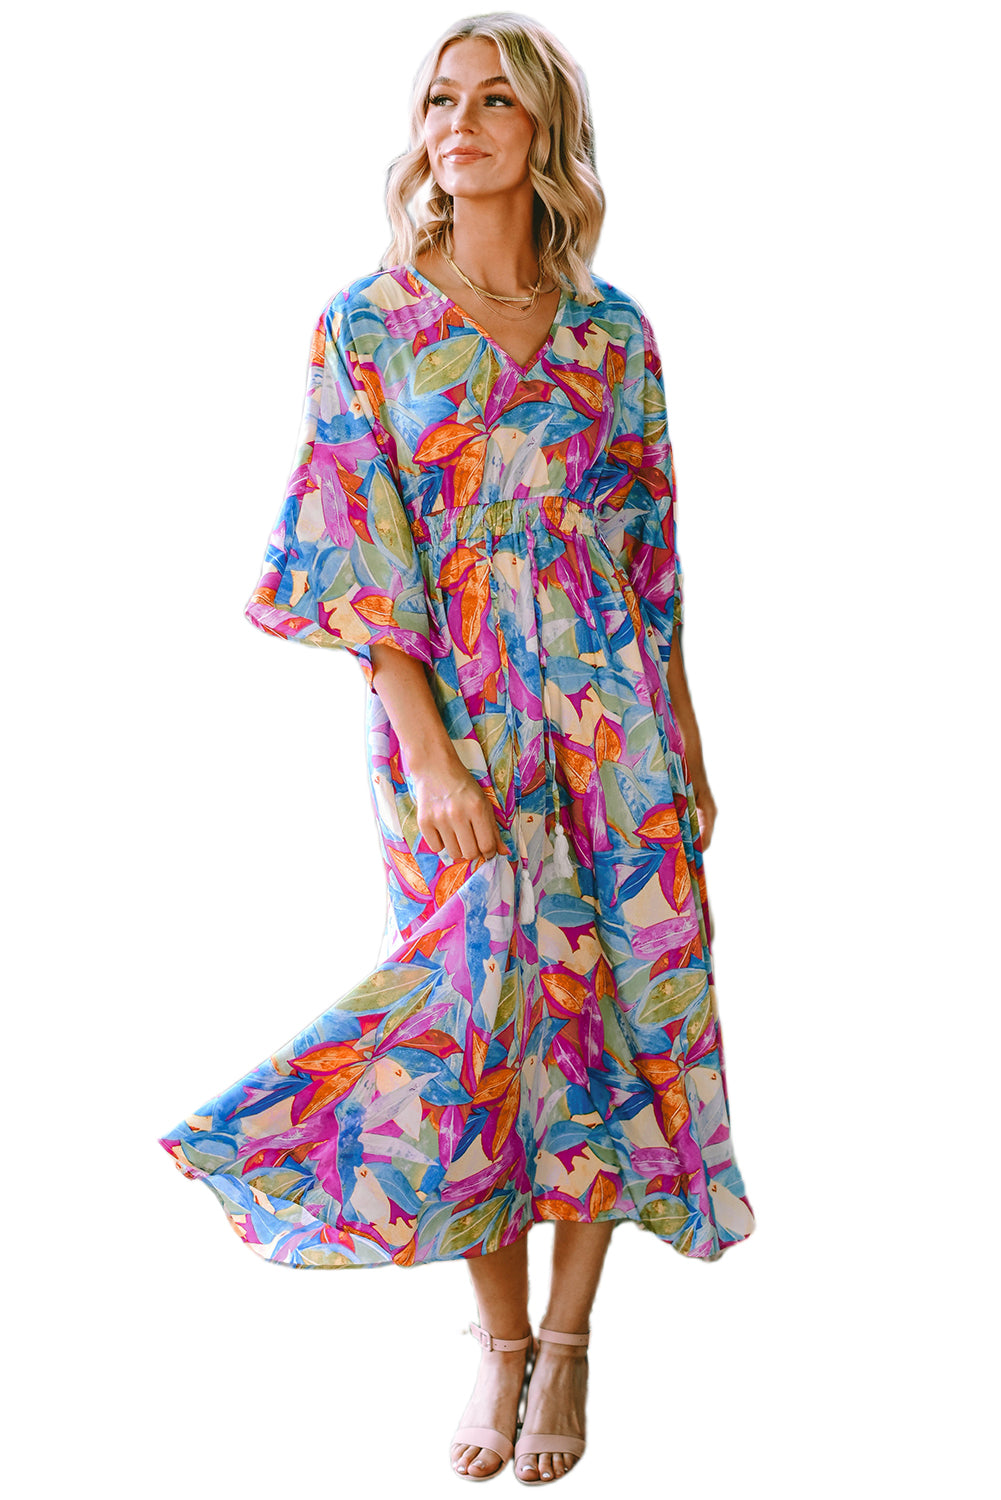 Robe longue multicolore à imprimé abstrait, taille haute, col en V